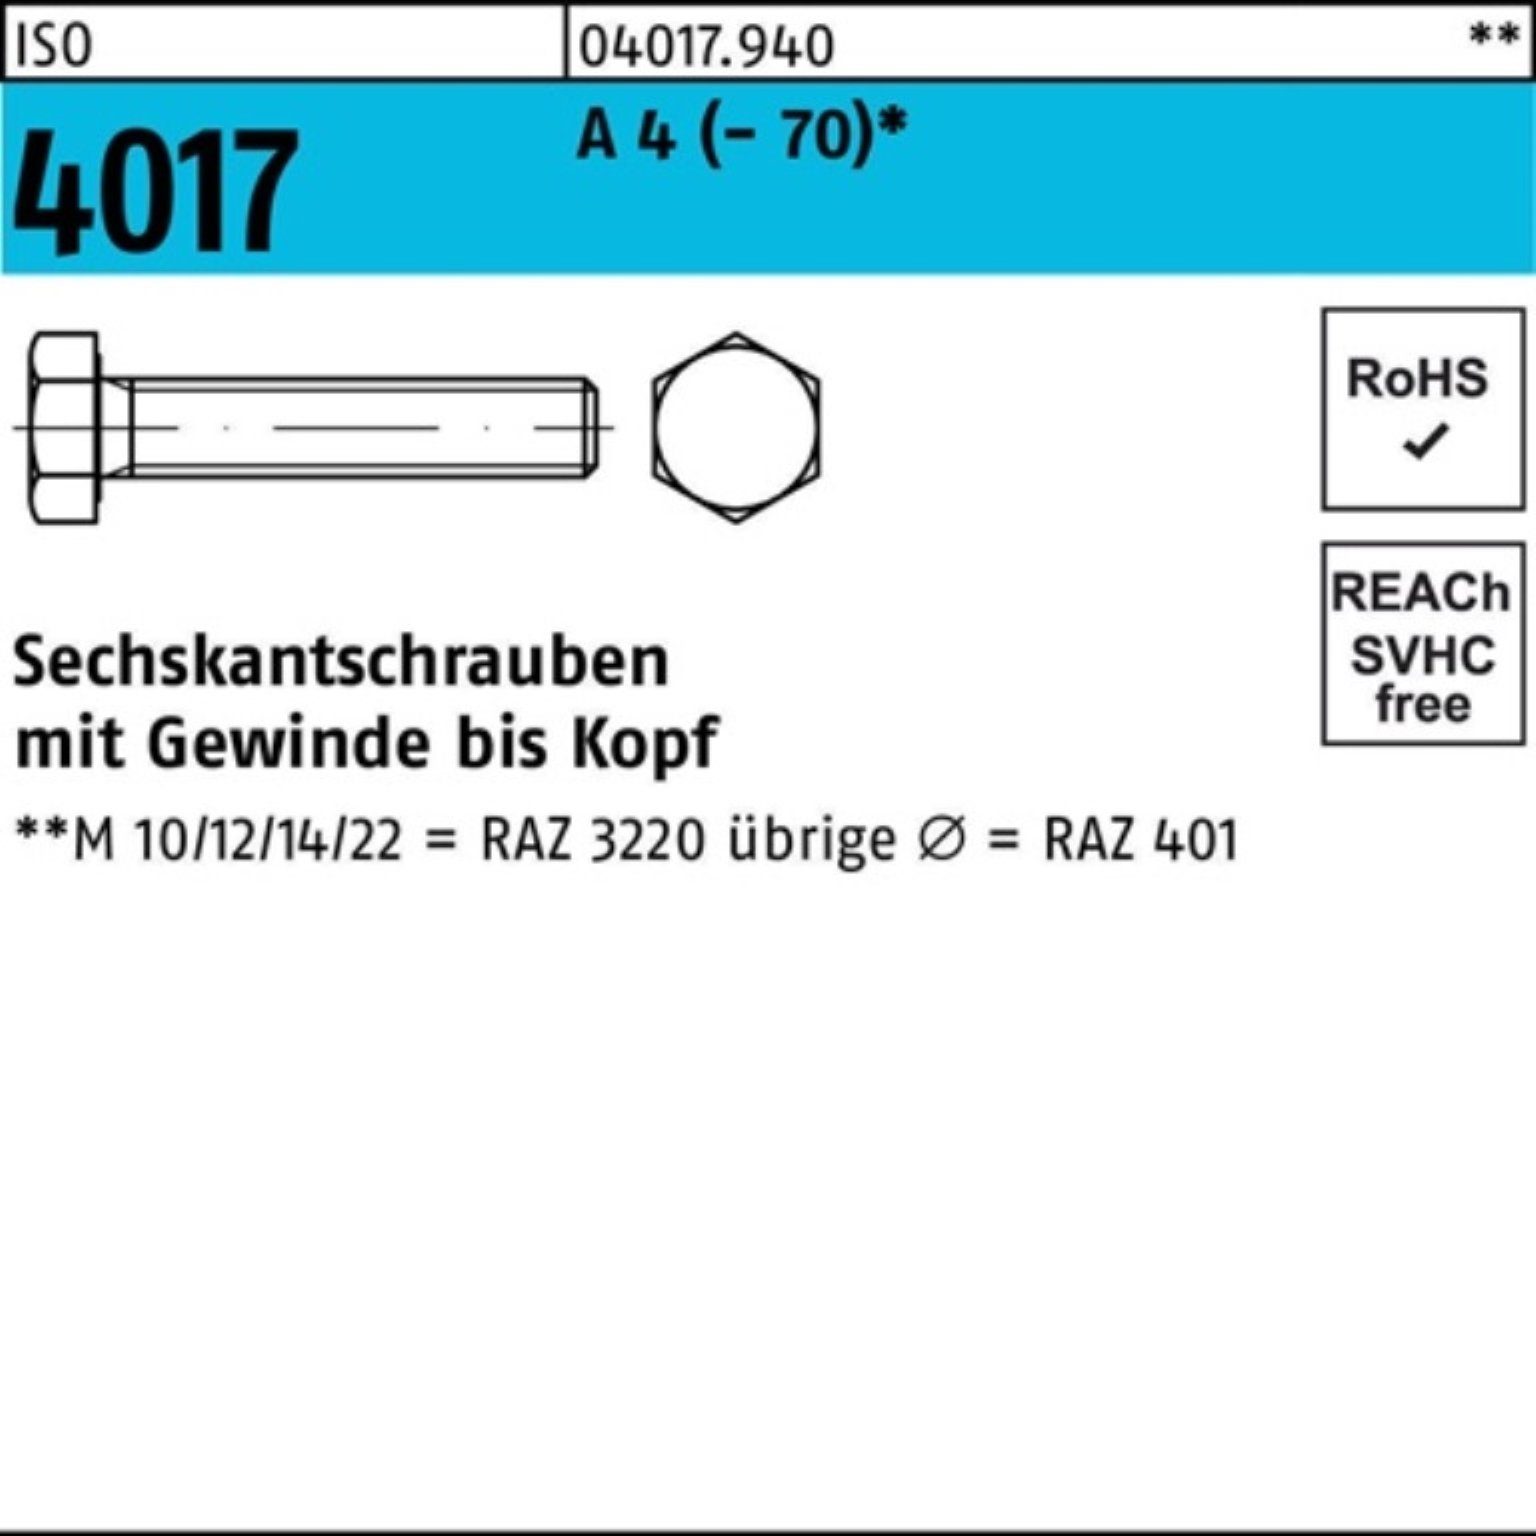 Bufab Sechskantschraube 100er Pack Sechskantschraube ISO 4017 VG M18x 30 A 4 (70) 1 Stück I